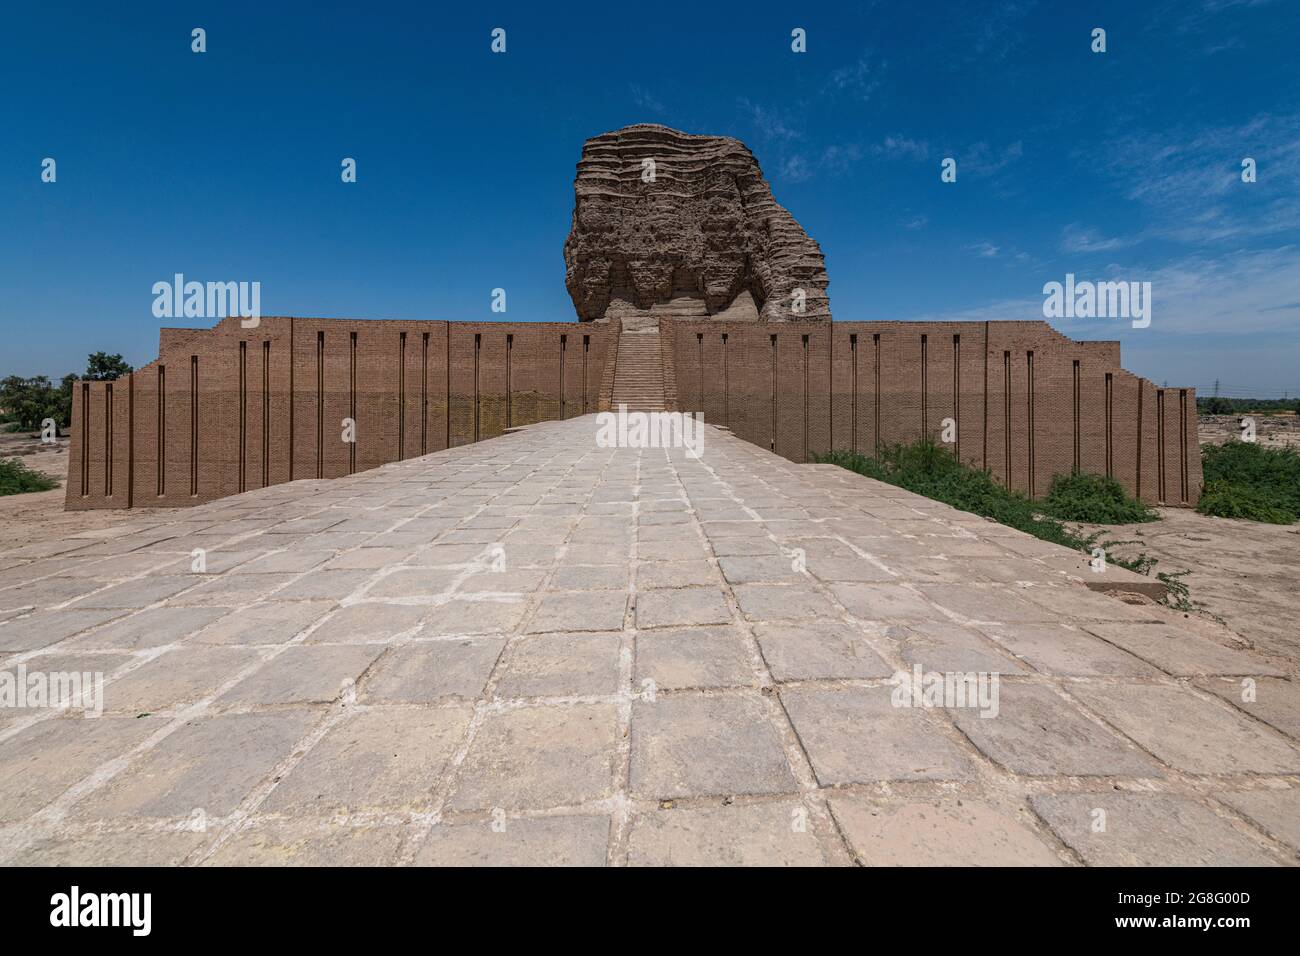 Ziggurat de Dur-Kurigalzu, Irak, Moyen-Orient Banque D'Images